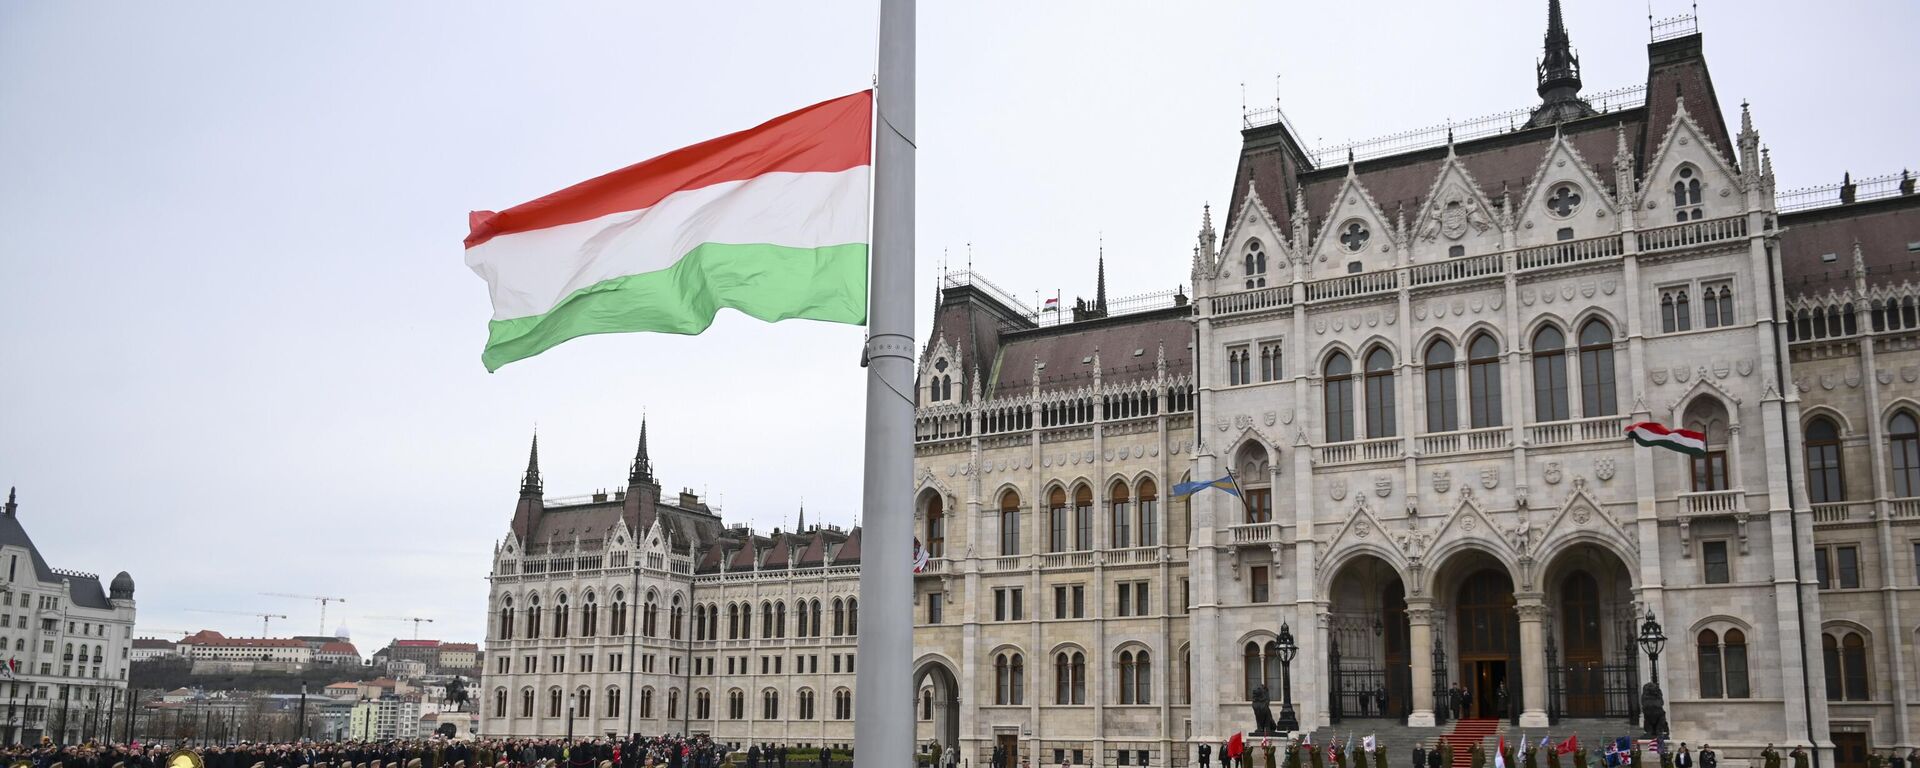 Guardas de honra húngaros içam a bandeira nacional em frente ao edifício do Parlamento, em Budapeste. Hungria, 15 de março de 2023 - Sputnik Brasil, 1920, 13.04.2023